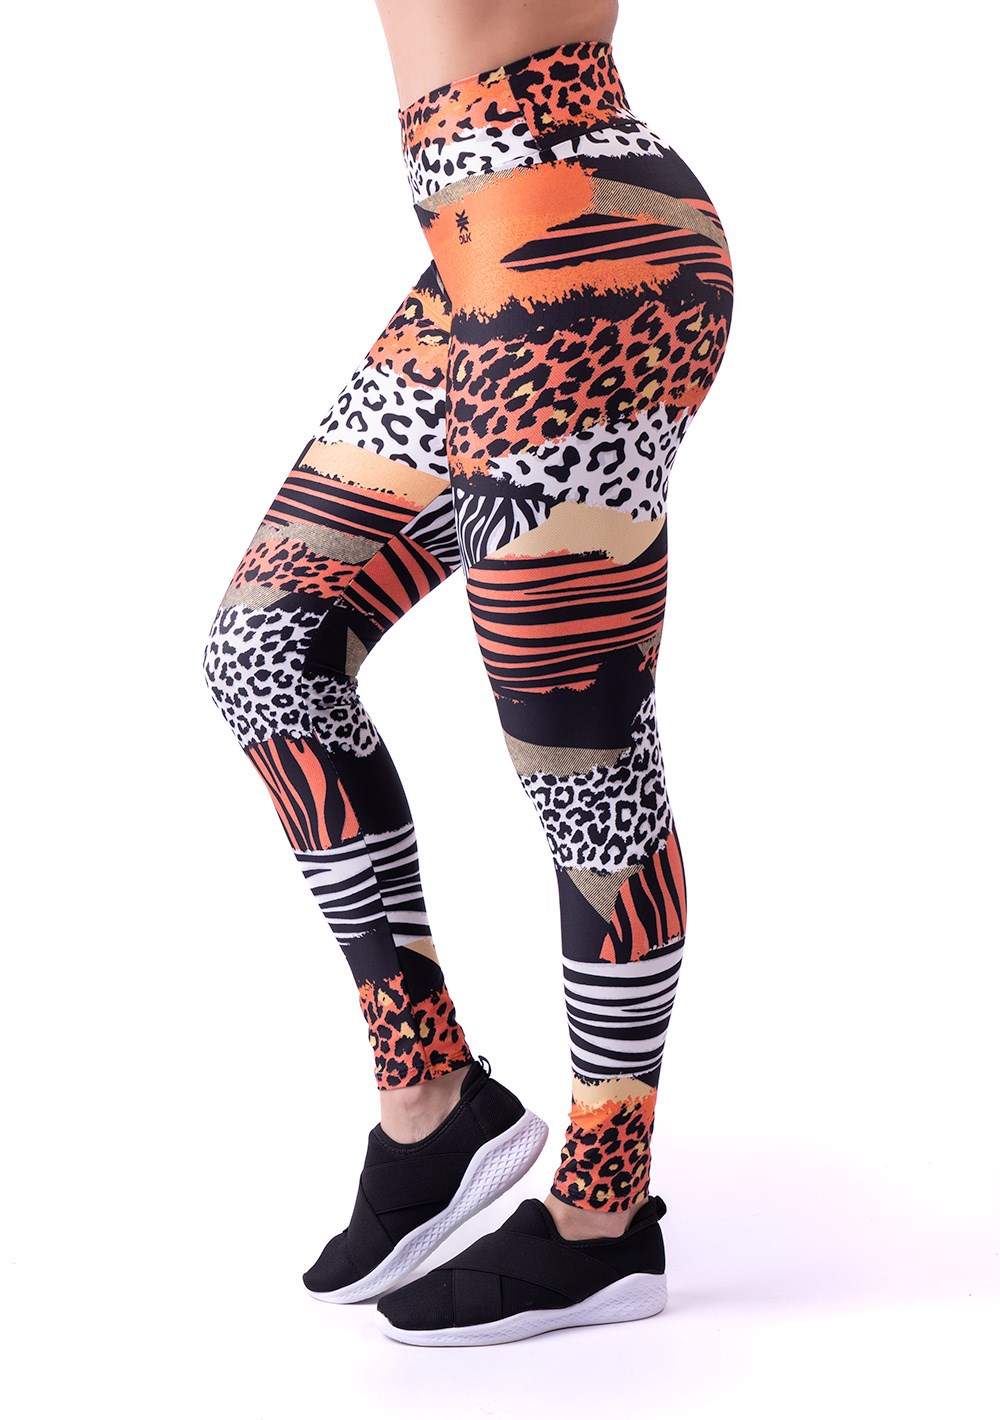 Legging fitness feminina new printed estampada mix geo